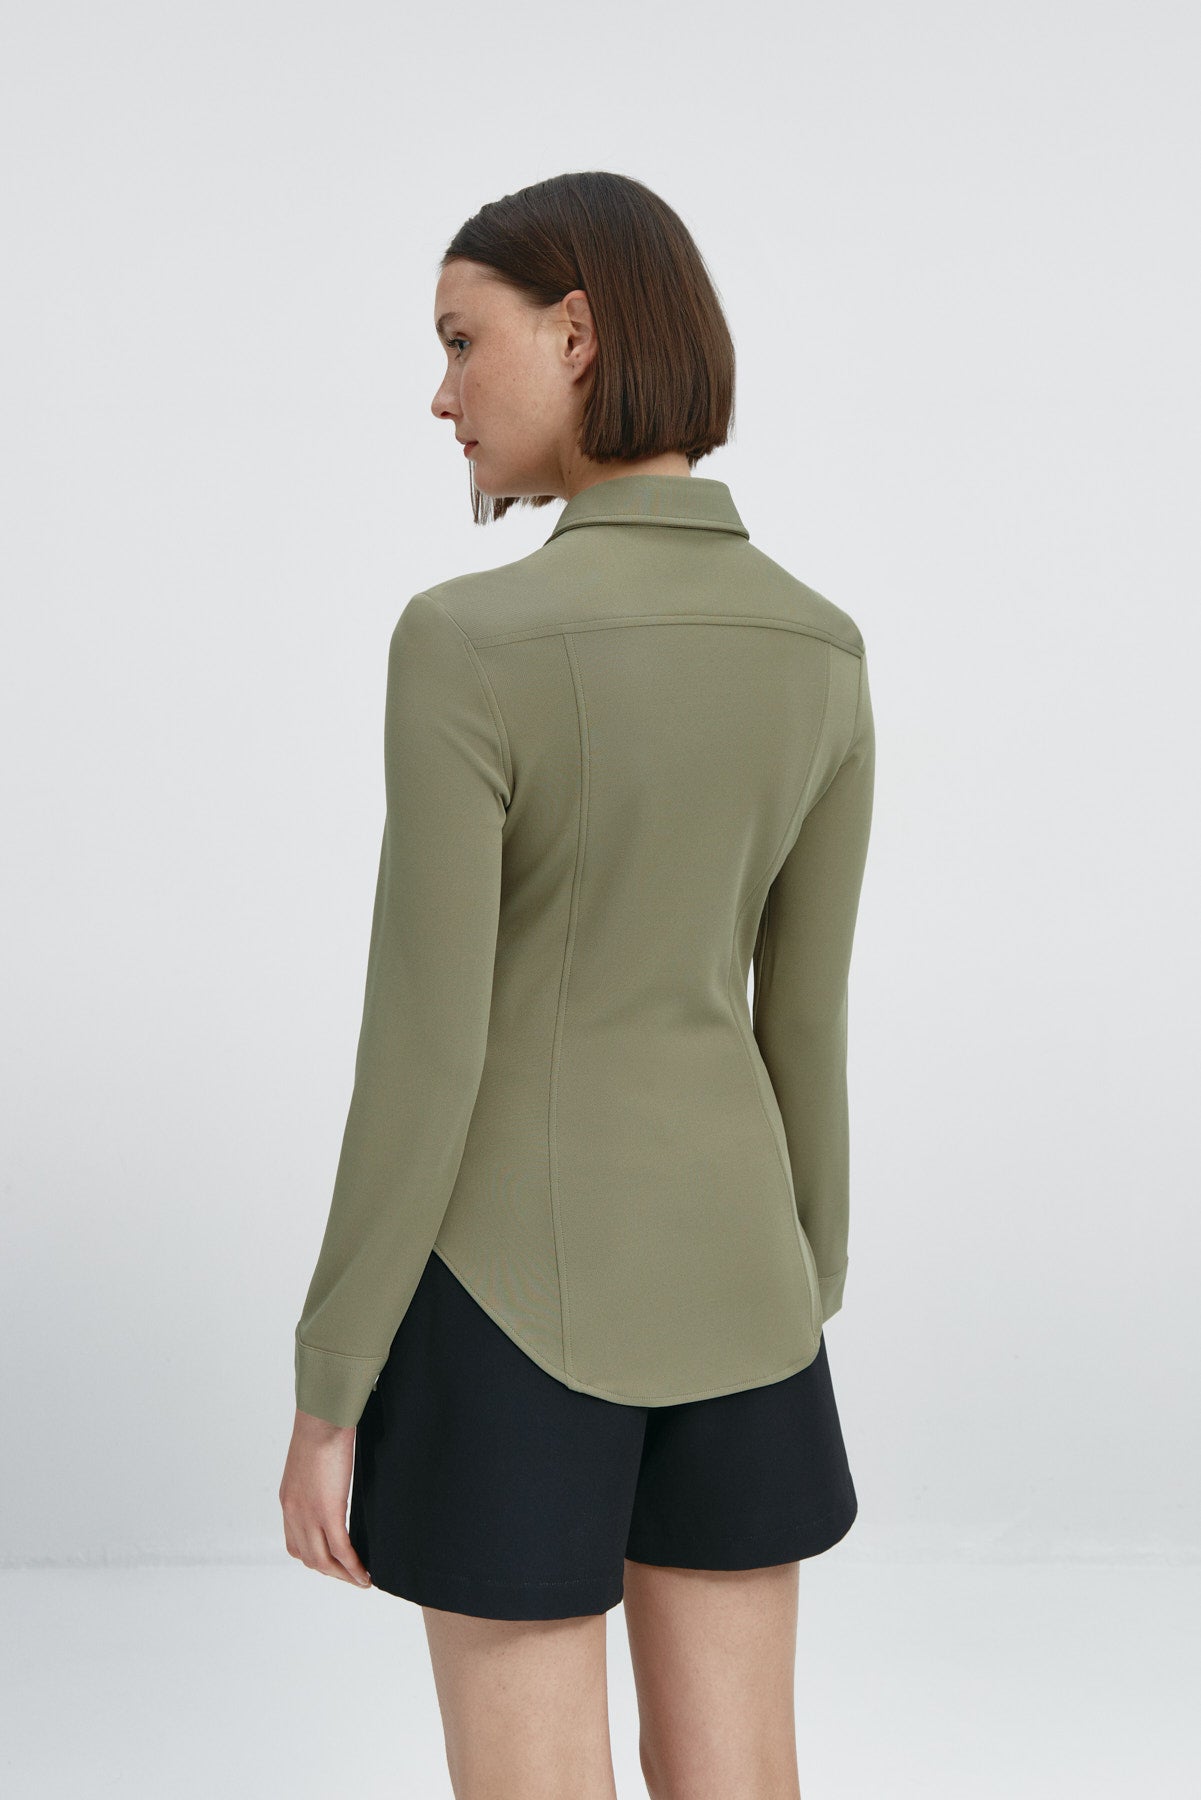 Camisa para mujer slim color verde malaquita, básica y versátil. Foto espalda